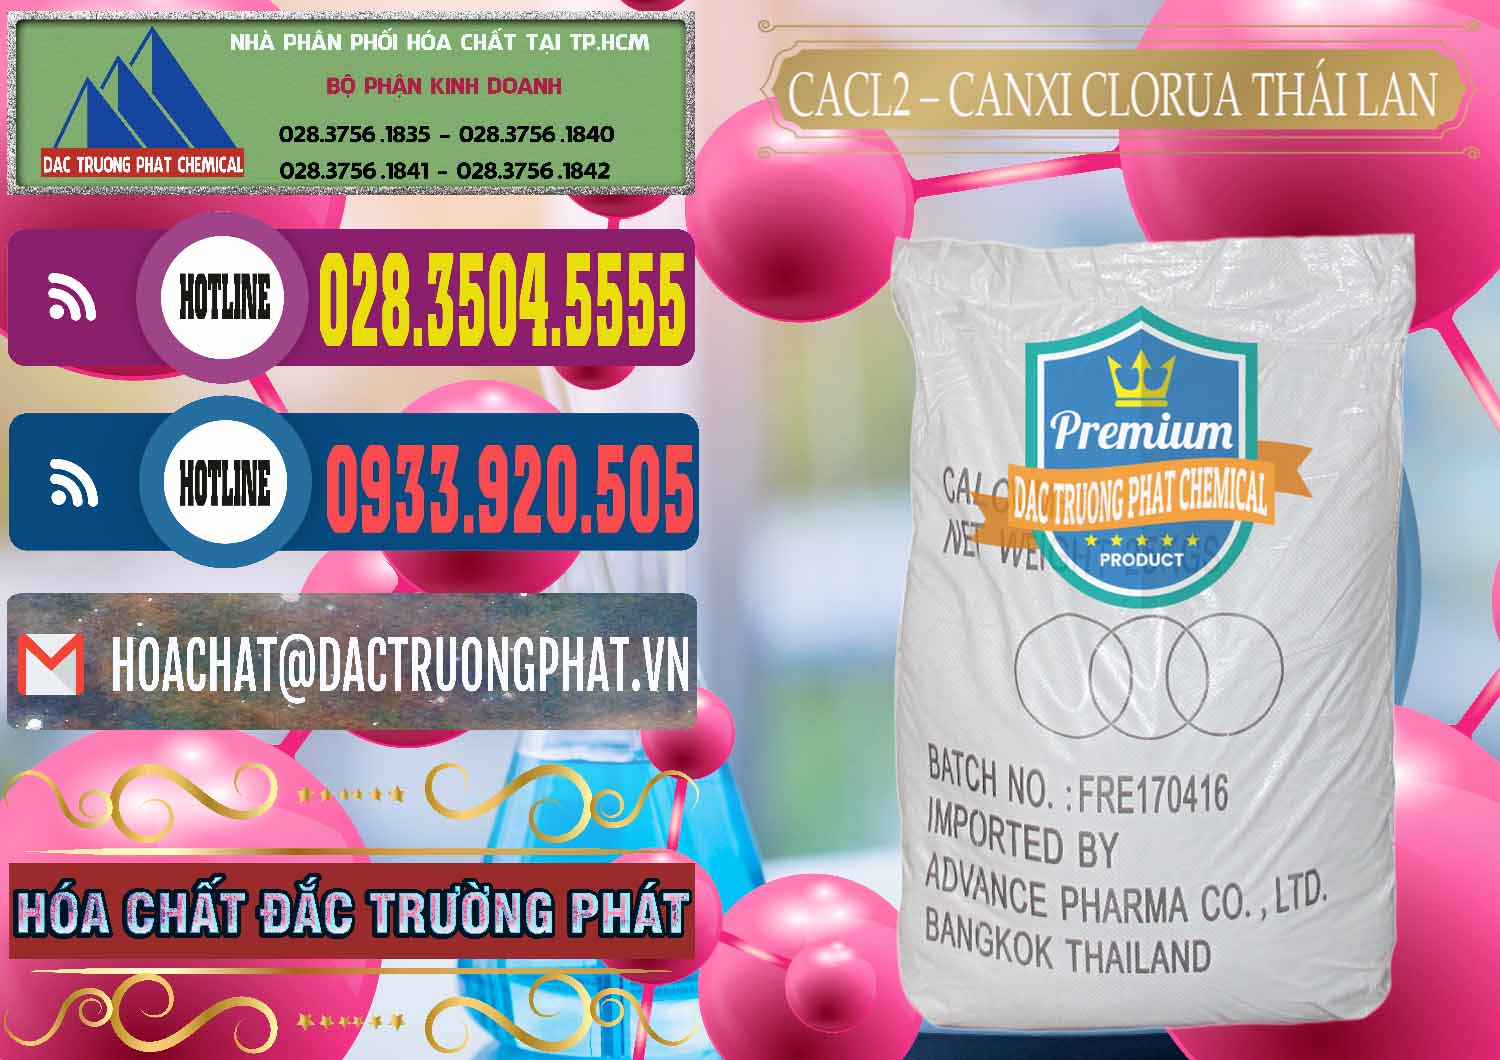 Chuyên phân phối và bán CaCl2 – Canxi Clorua 96% Thái Lan - 0042 - Cty kinh doanh và cung cấp hóa chất tại TP.HCM - muabanhoachat.com.vn